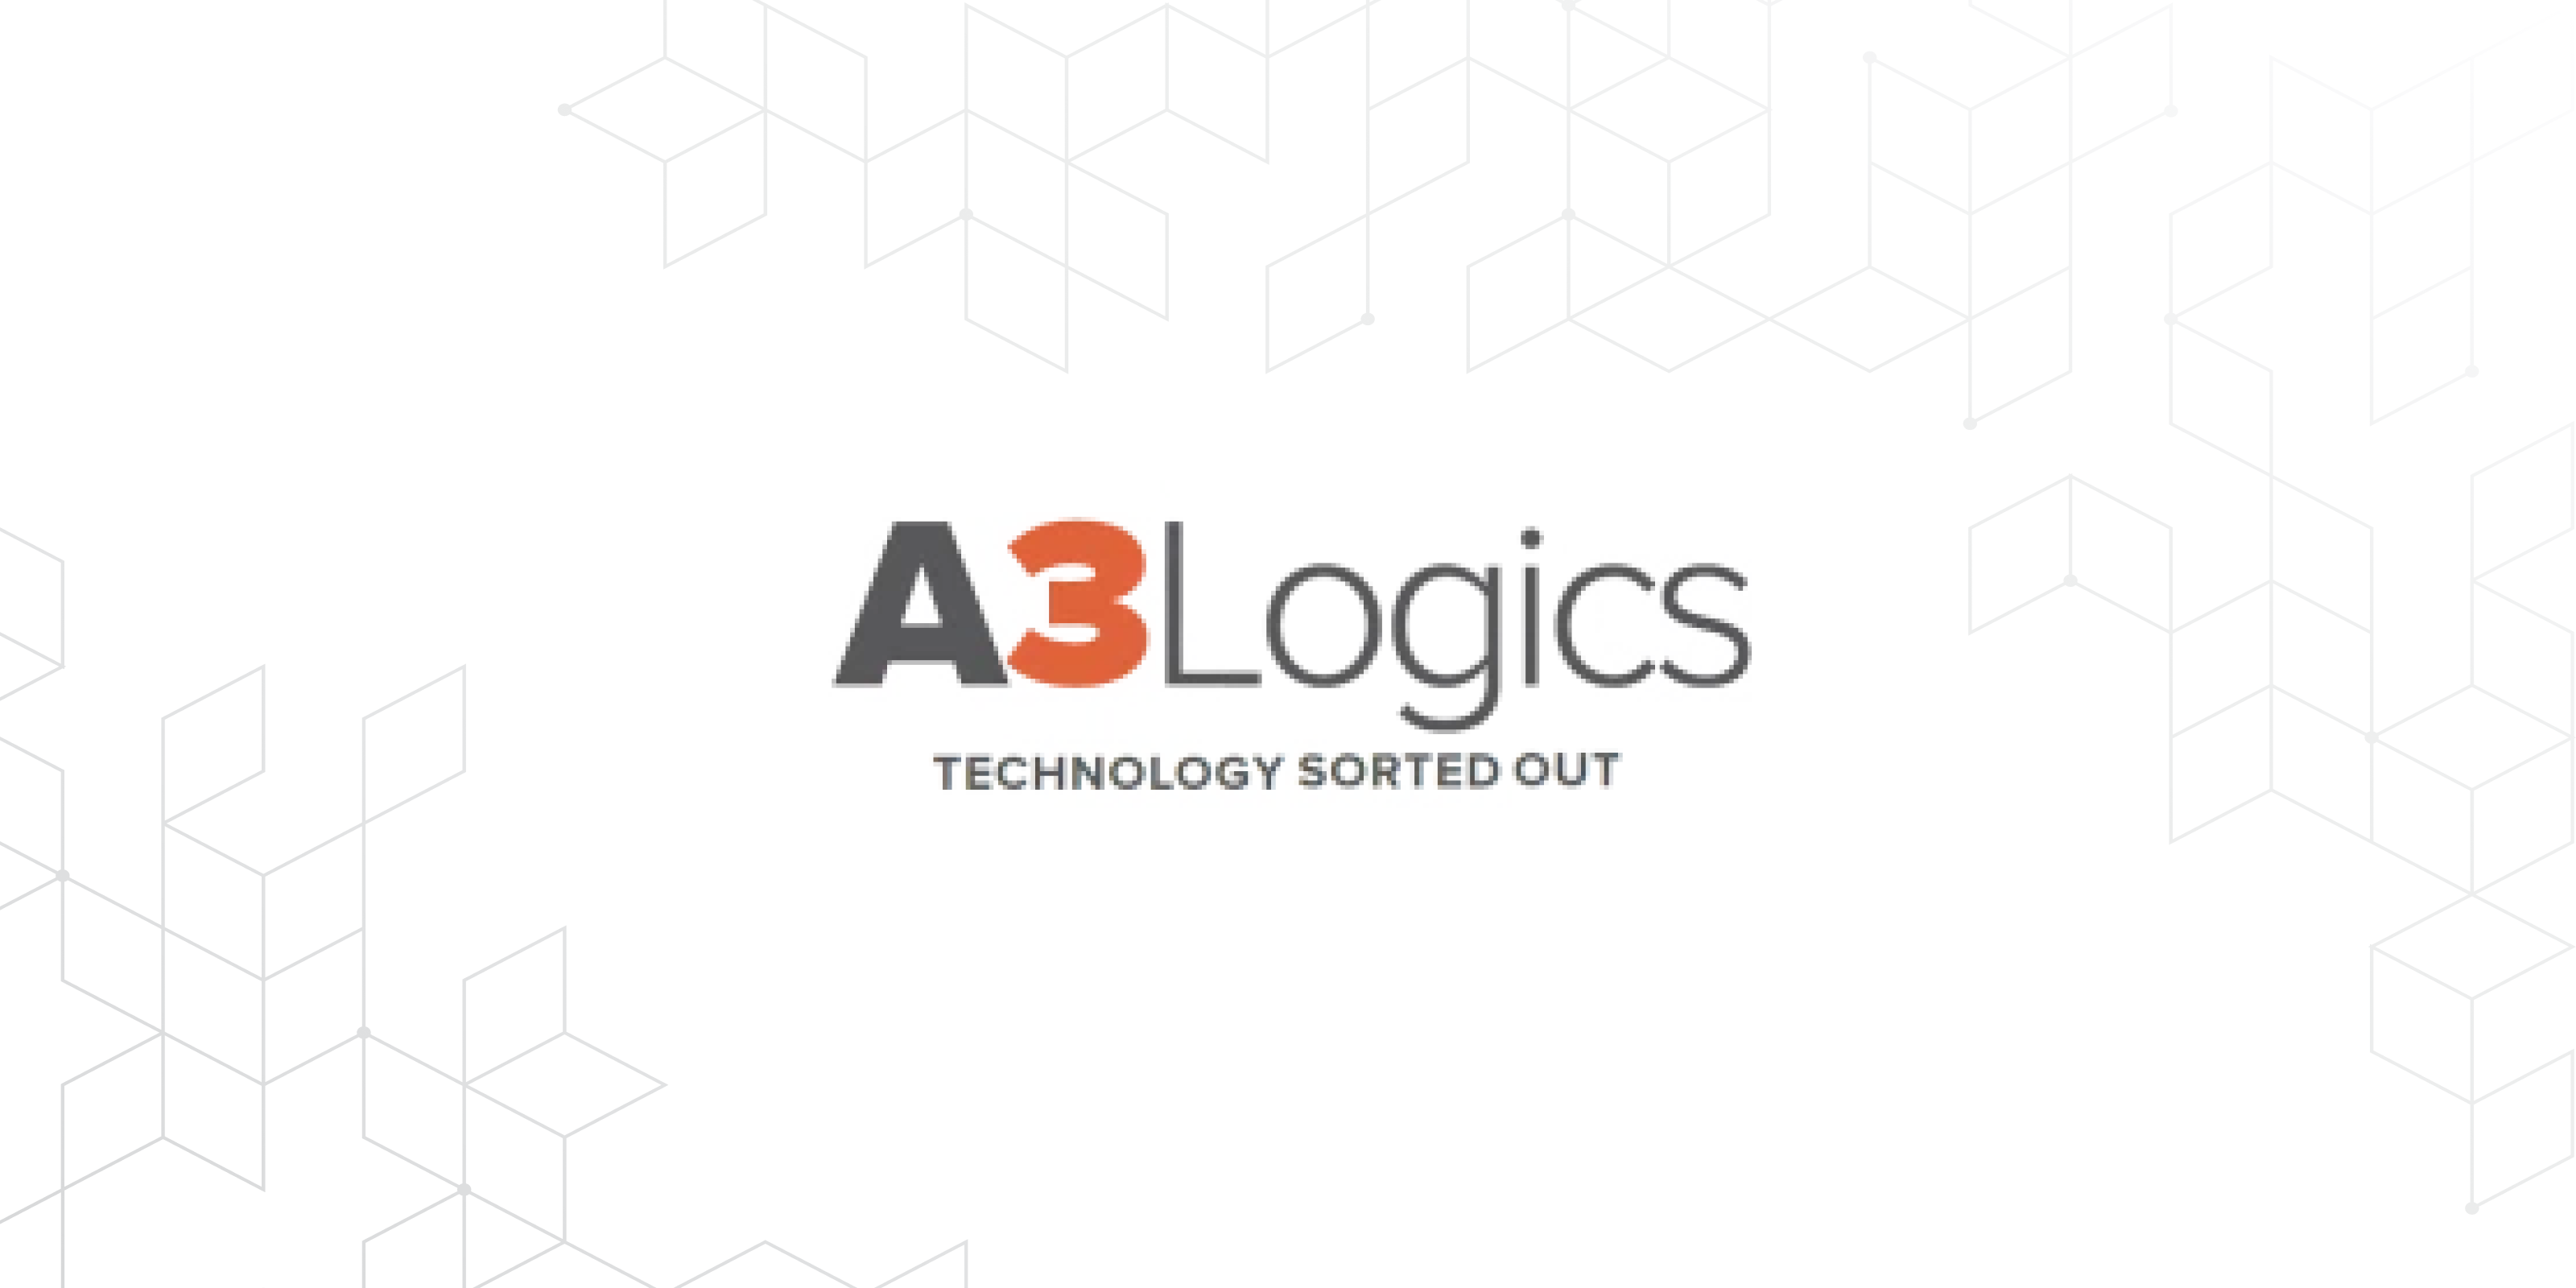 A3Logics' logo